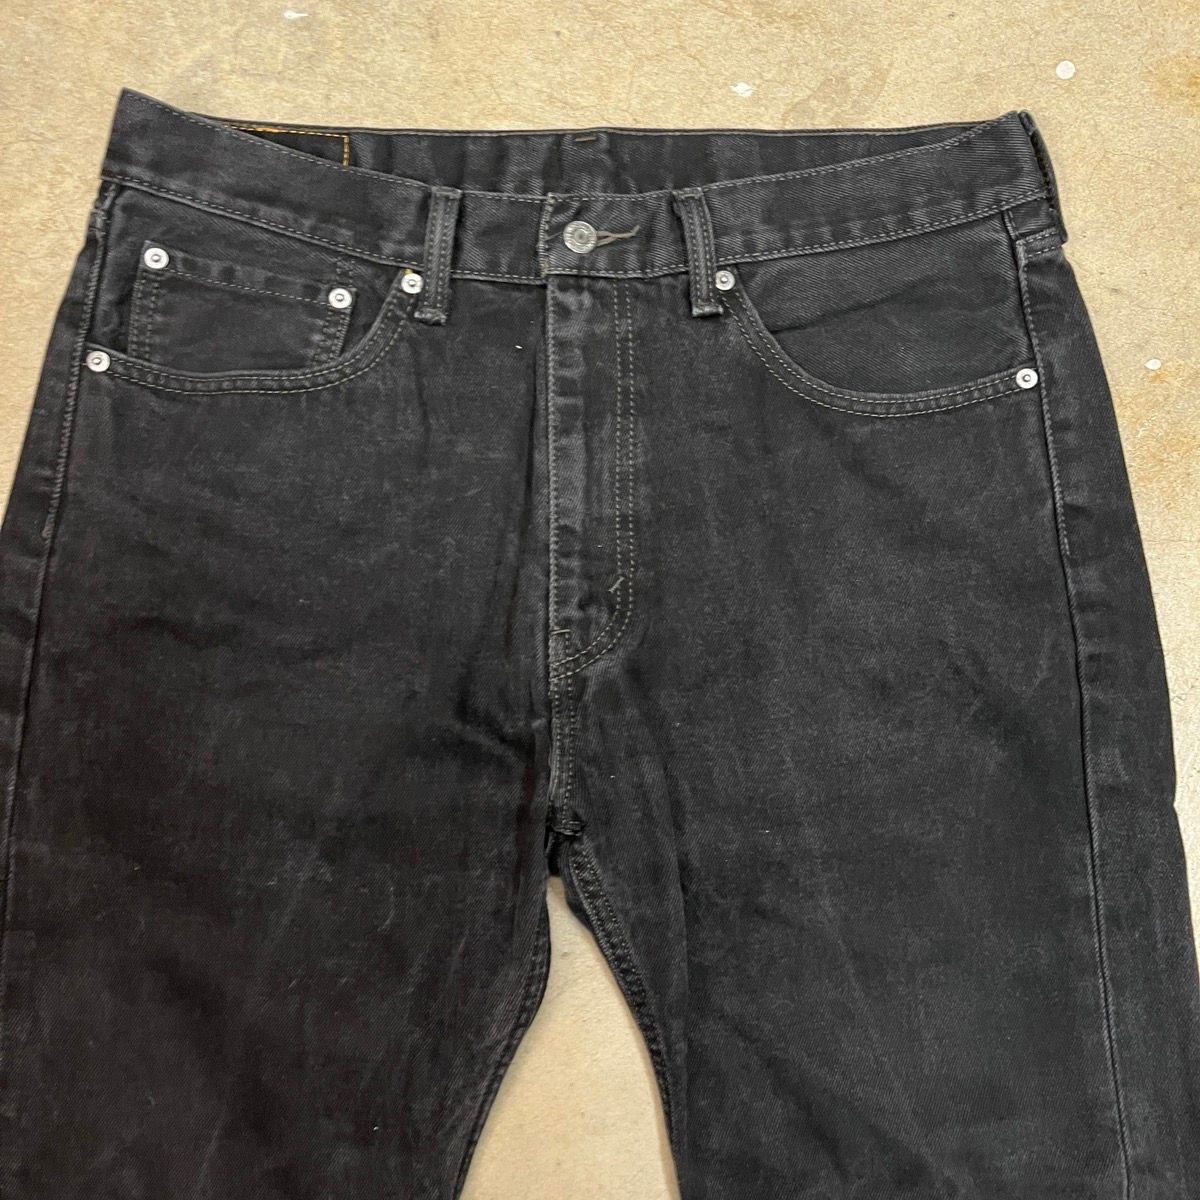 Vintage Levi’s 505 Black Jeans Size 36x30 Size US 36 / EU 52 - 2 Preview